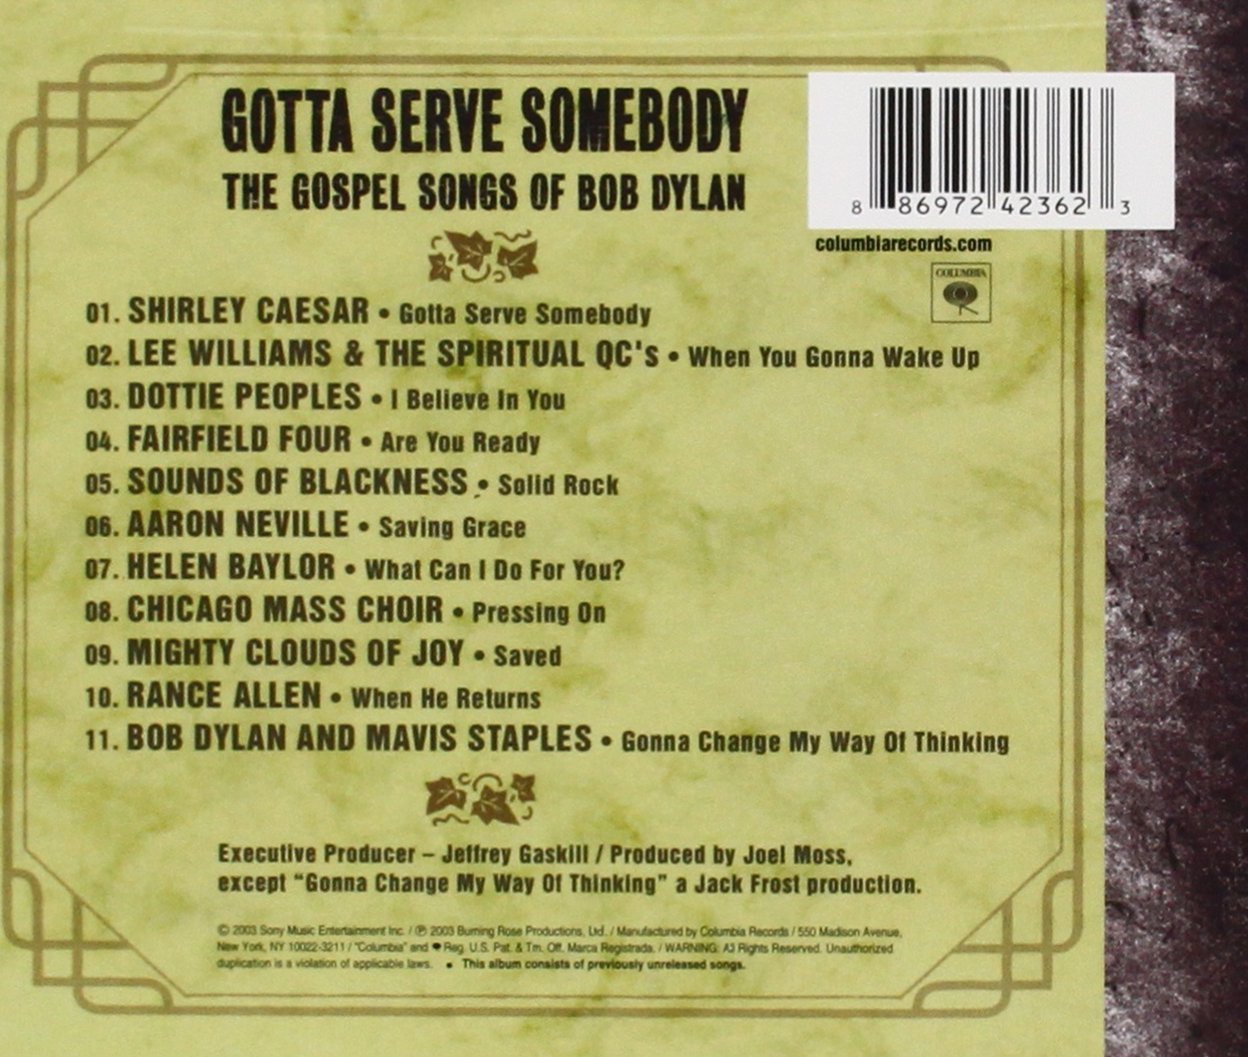 Gotta Serve Somebody - The Gospel Songs of Bob Dylan (DVD)